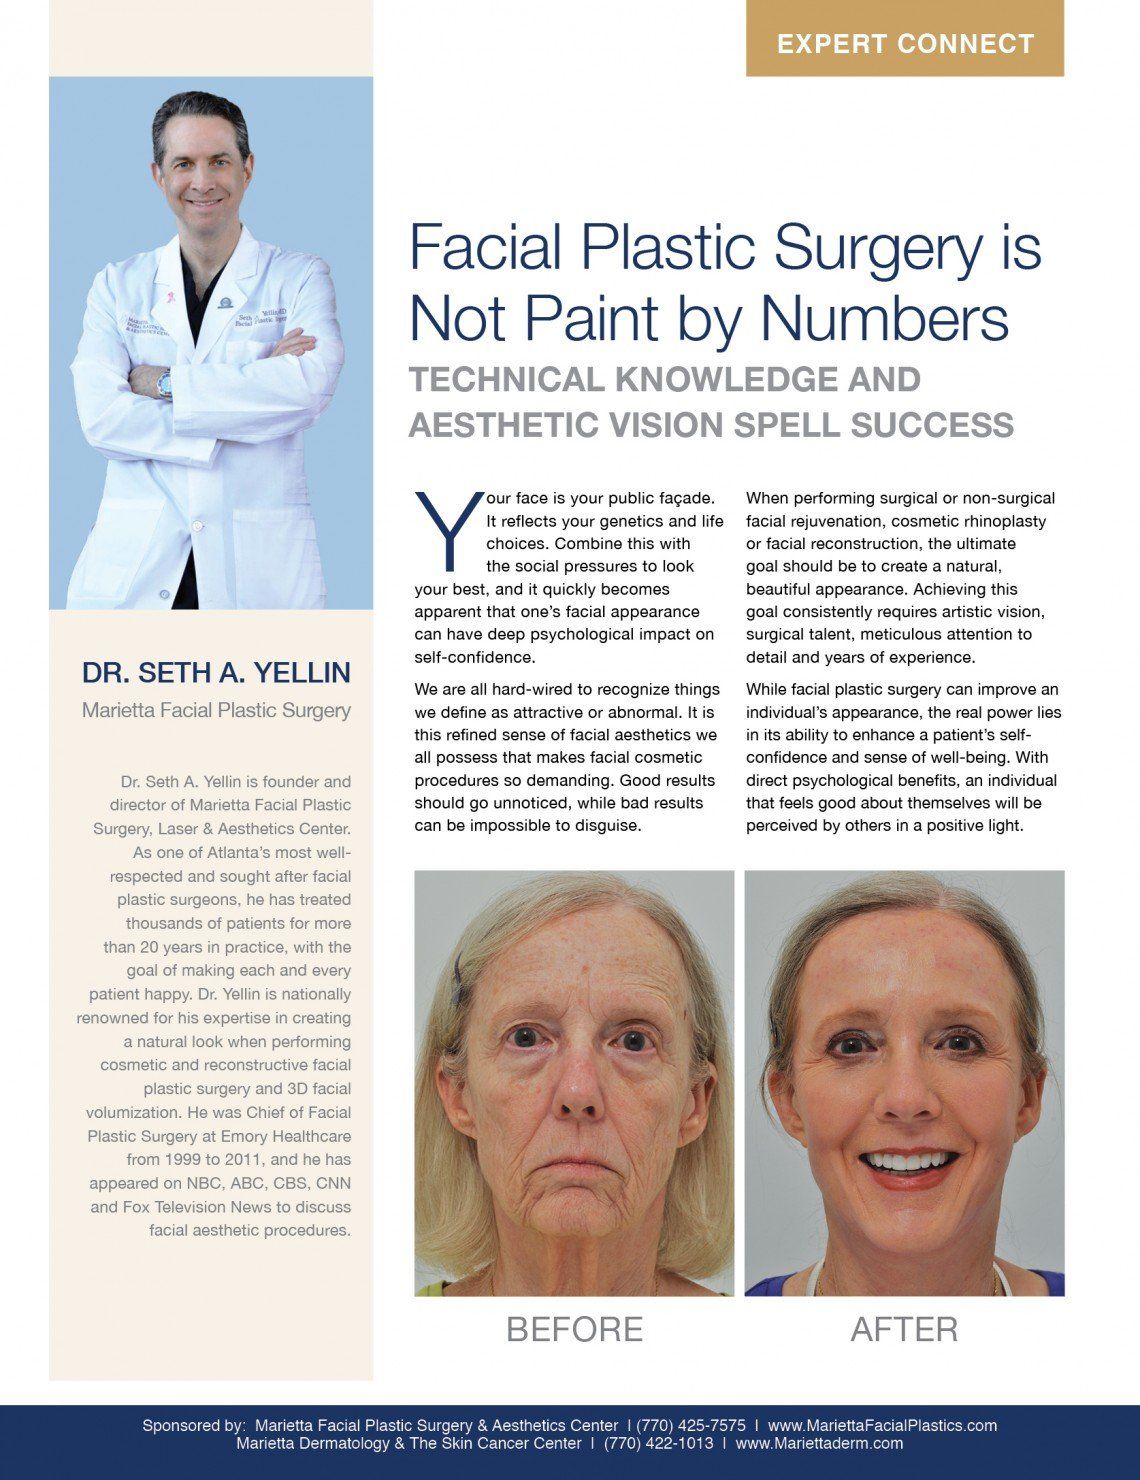 Georgia center for facial plastic surgery